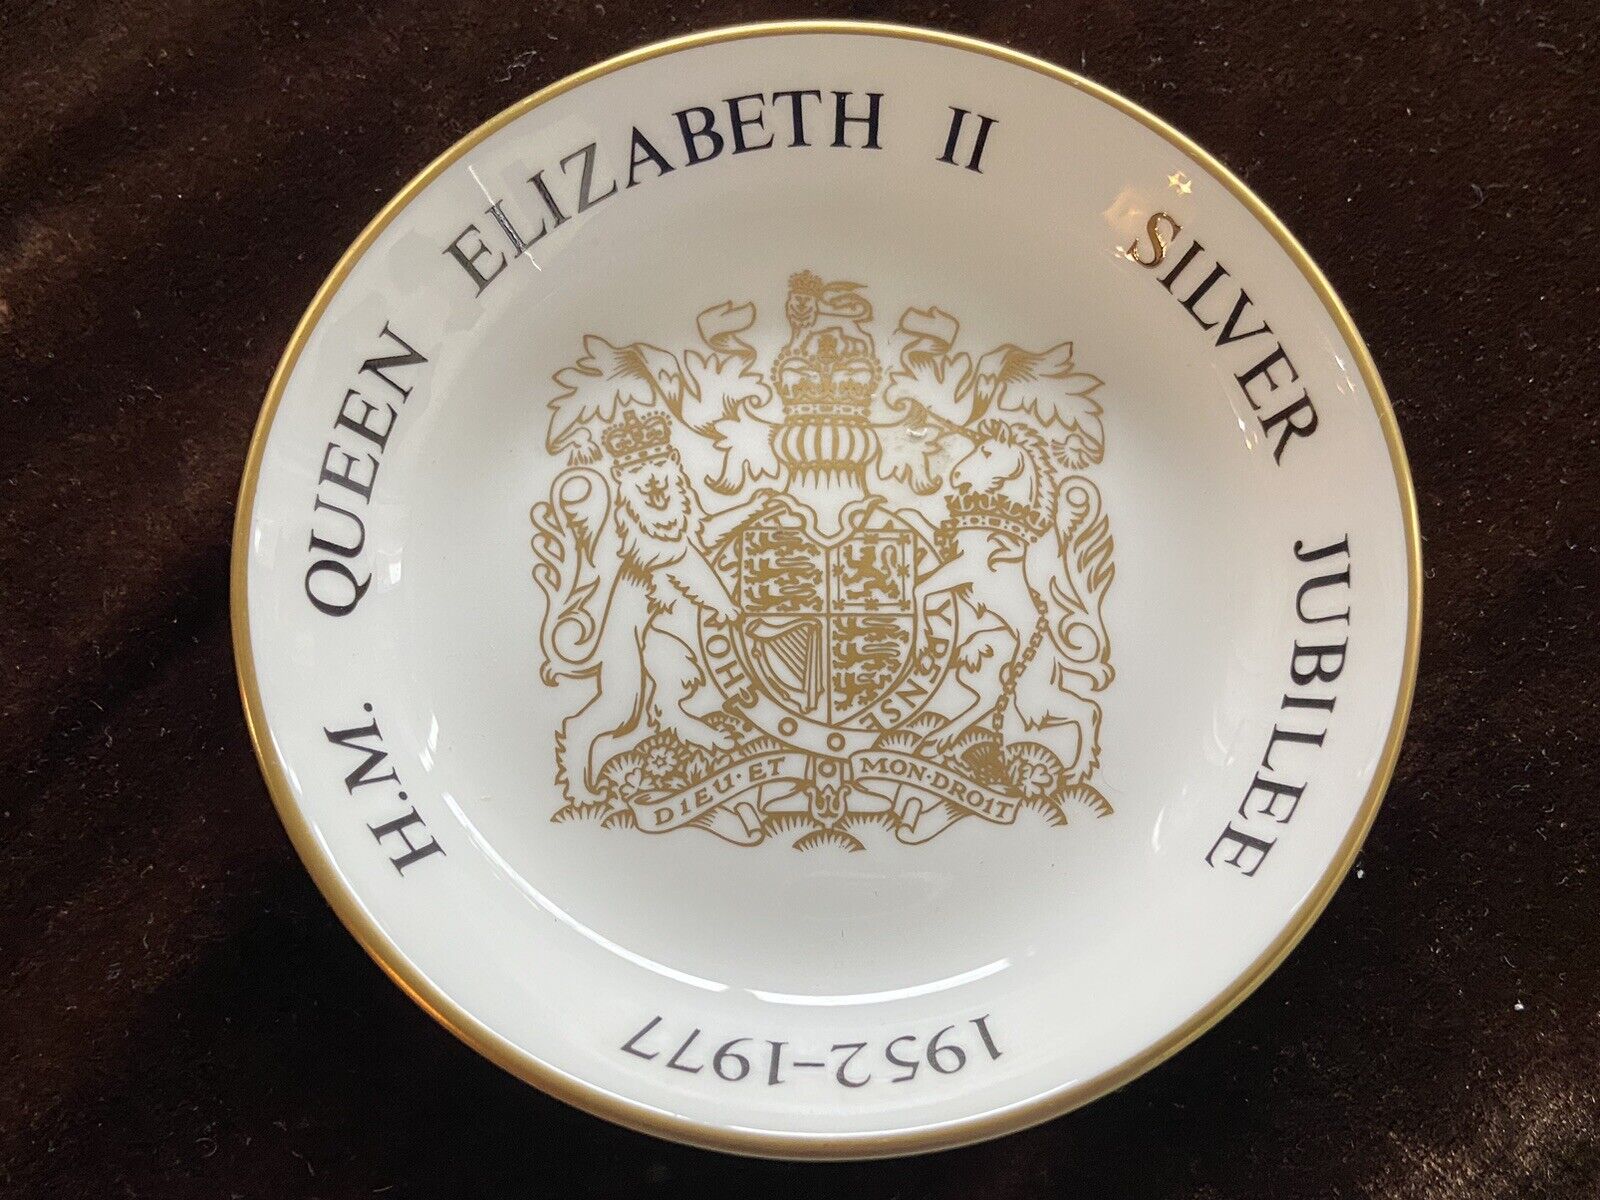 Queen Elizabeth II Silver Jubilee trinket dish 